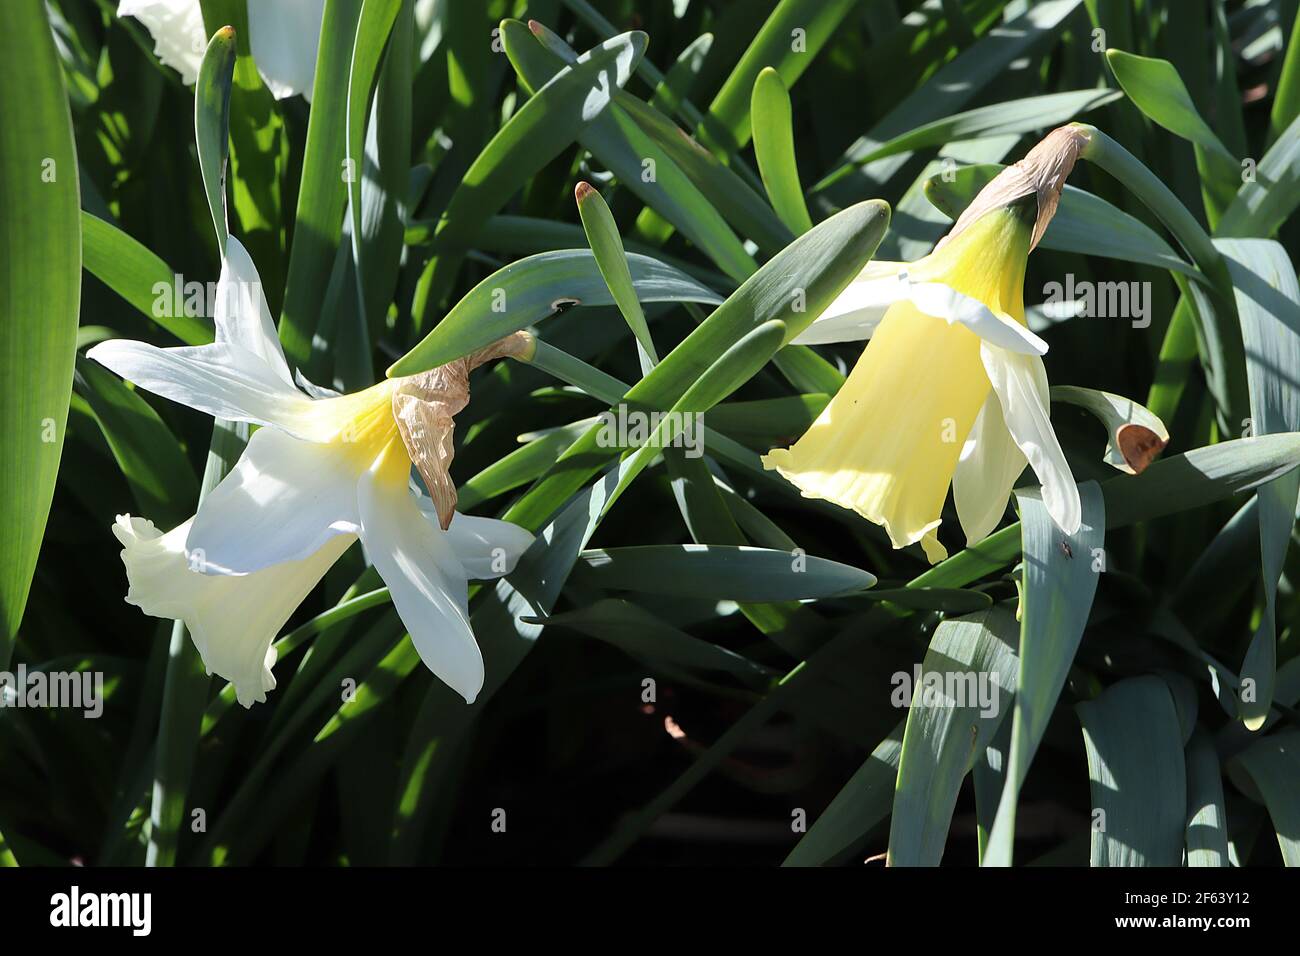 Narcissus ‘Montant Hood’ Division 1 jonquilles en trompette jonquille Mount Hood jonquille – pétales blancs et grande trompette jaune pâle, mars, Angleterre, Royaume-Uni Banque D'Images